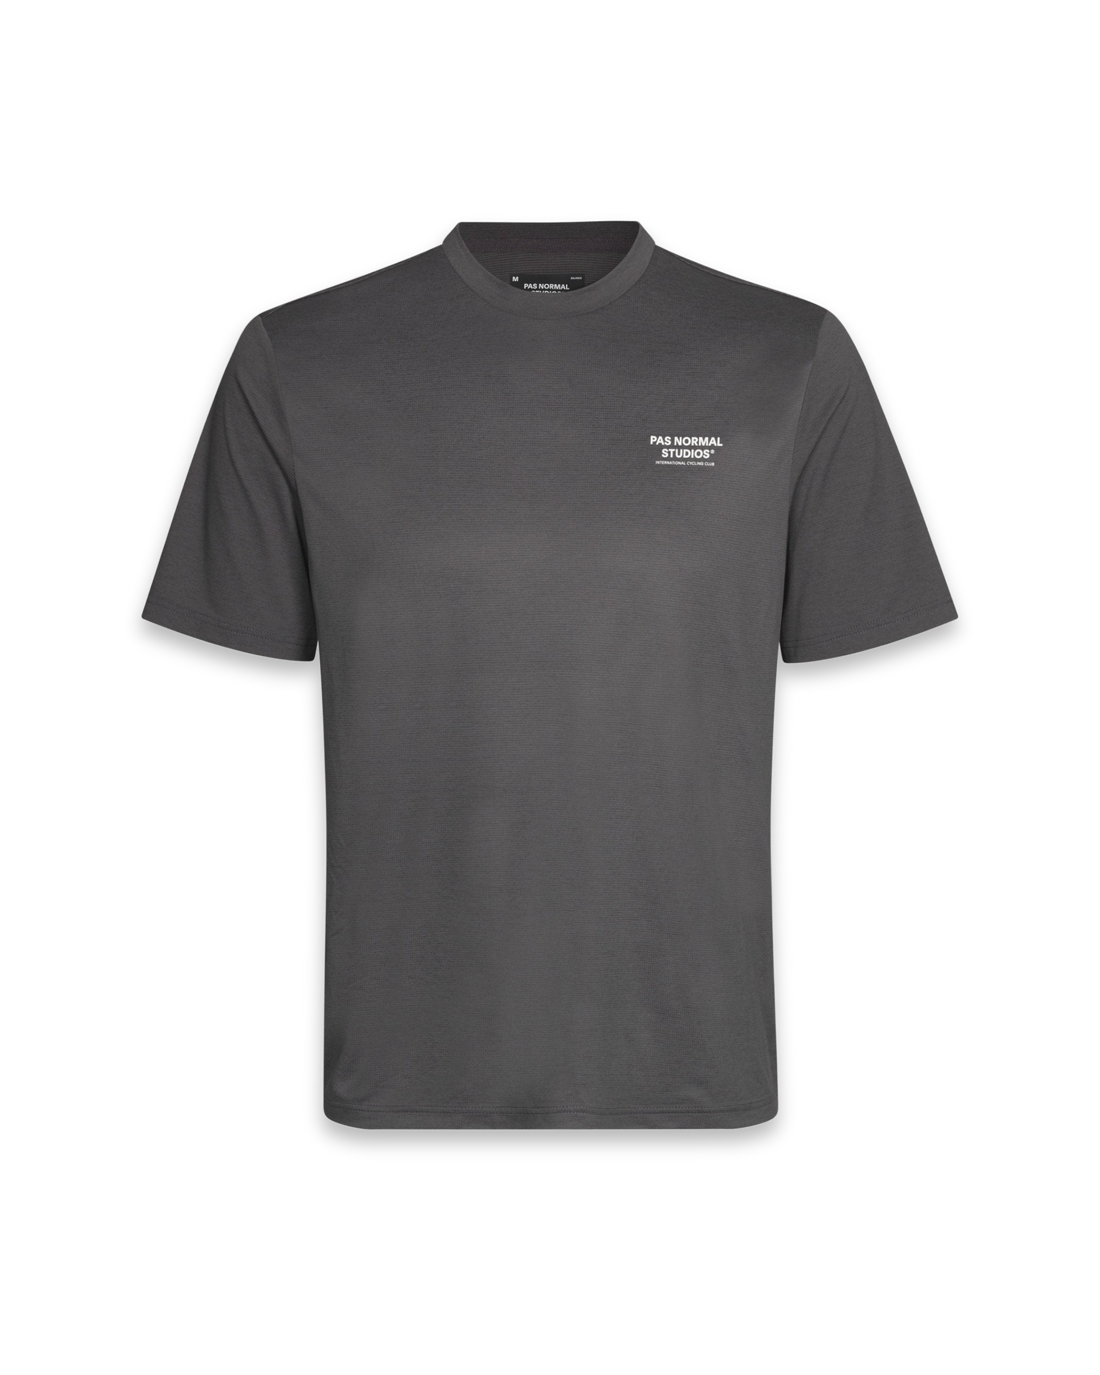 Balance T-Shirt - Stone Grey - Pas Normal Studios